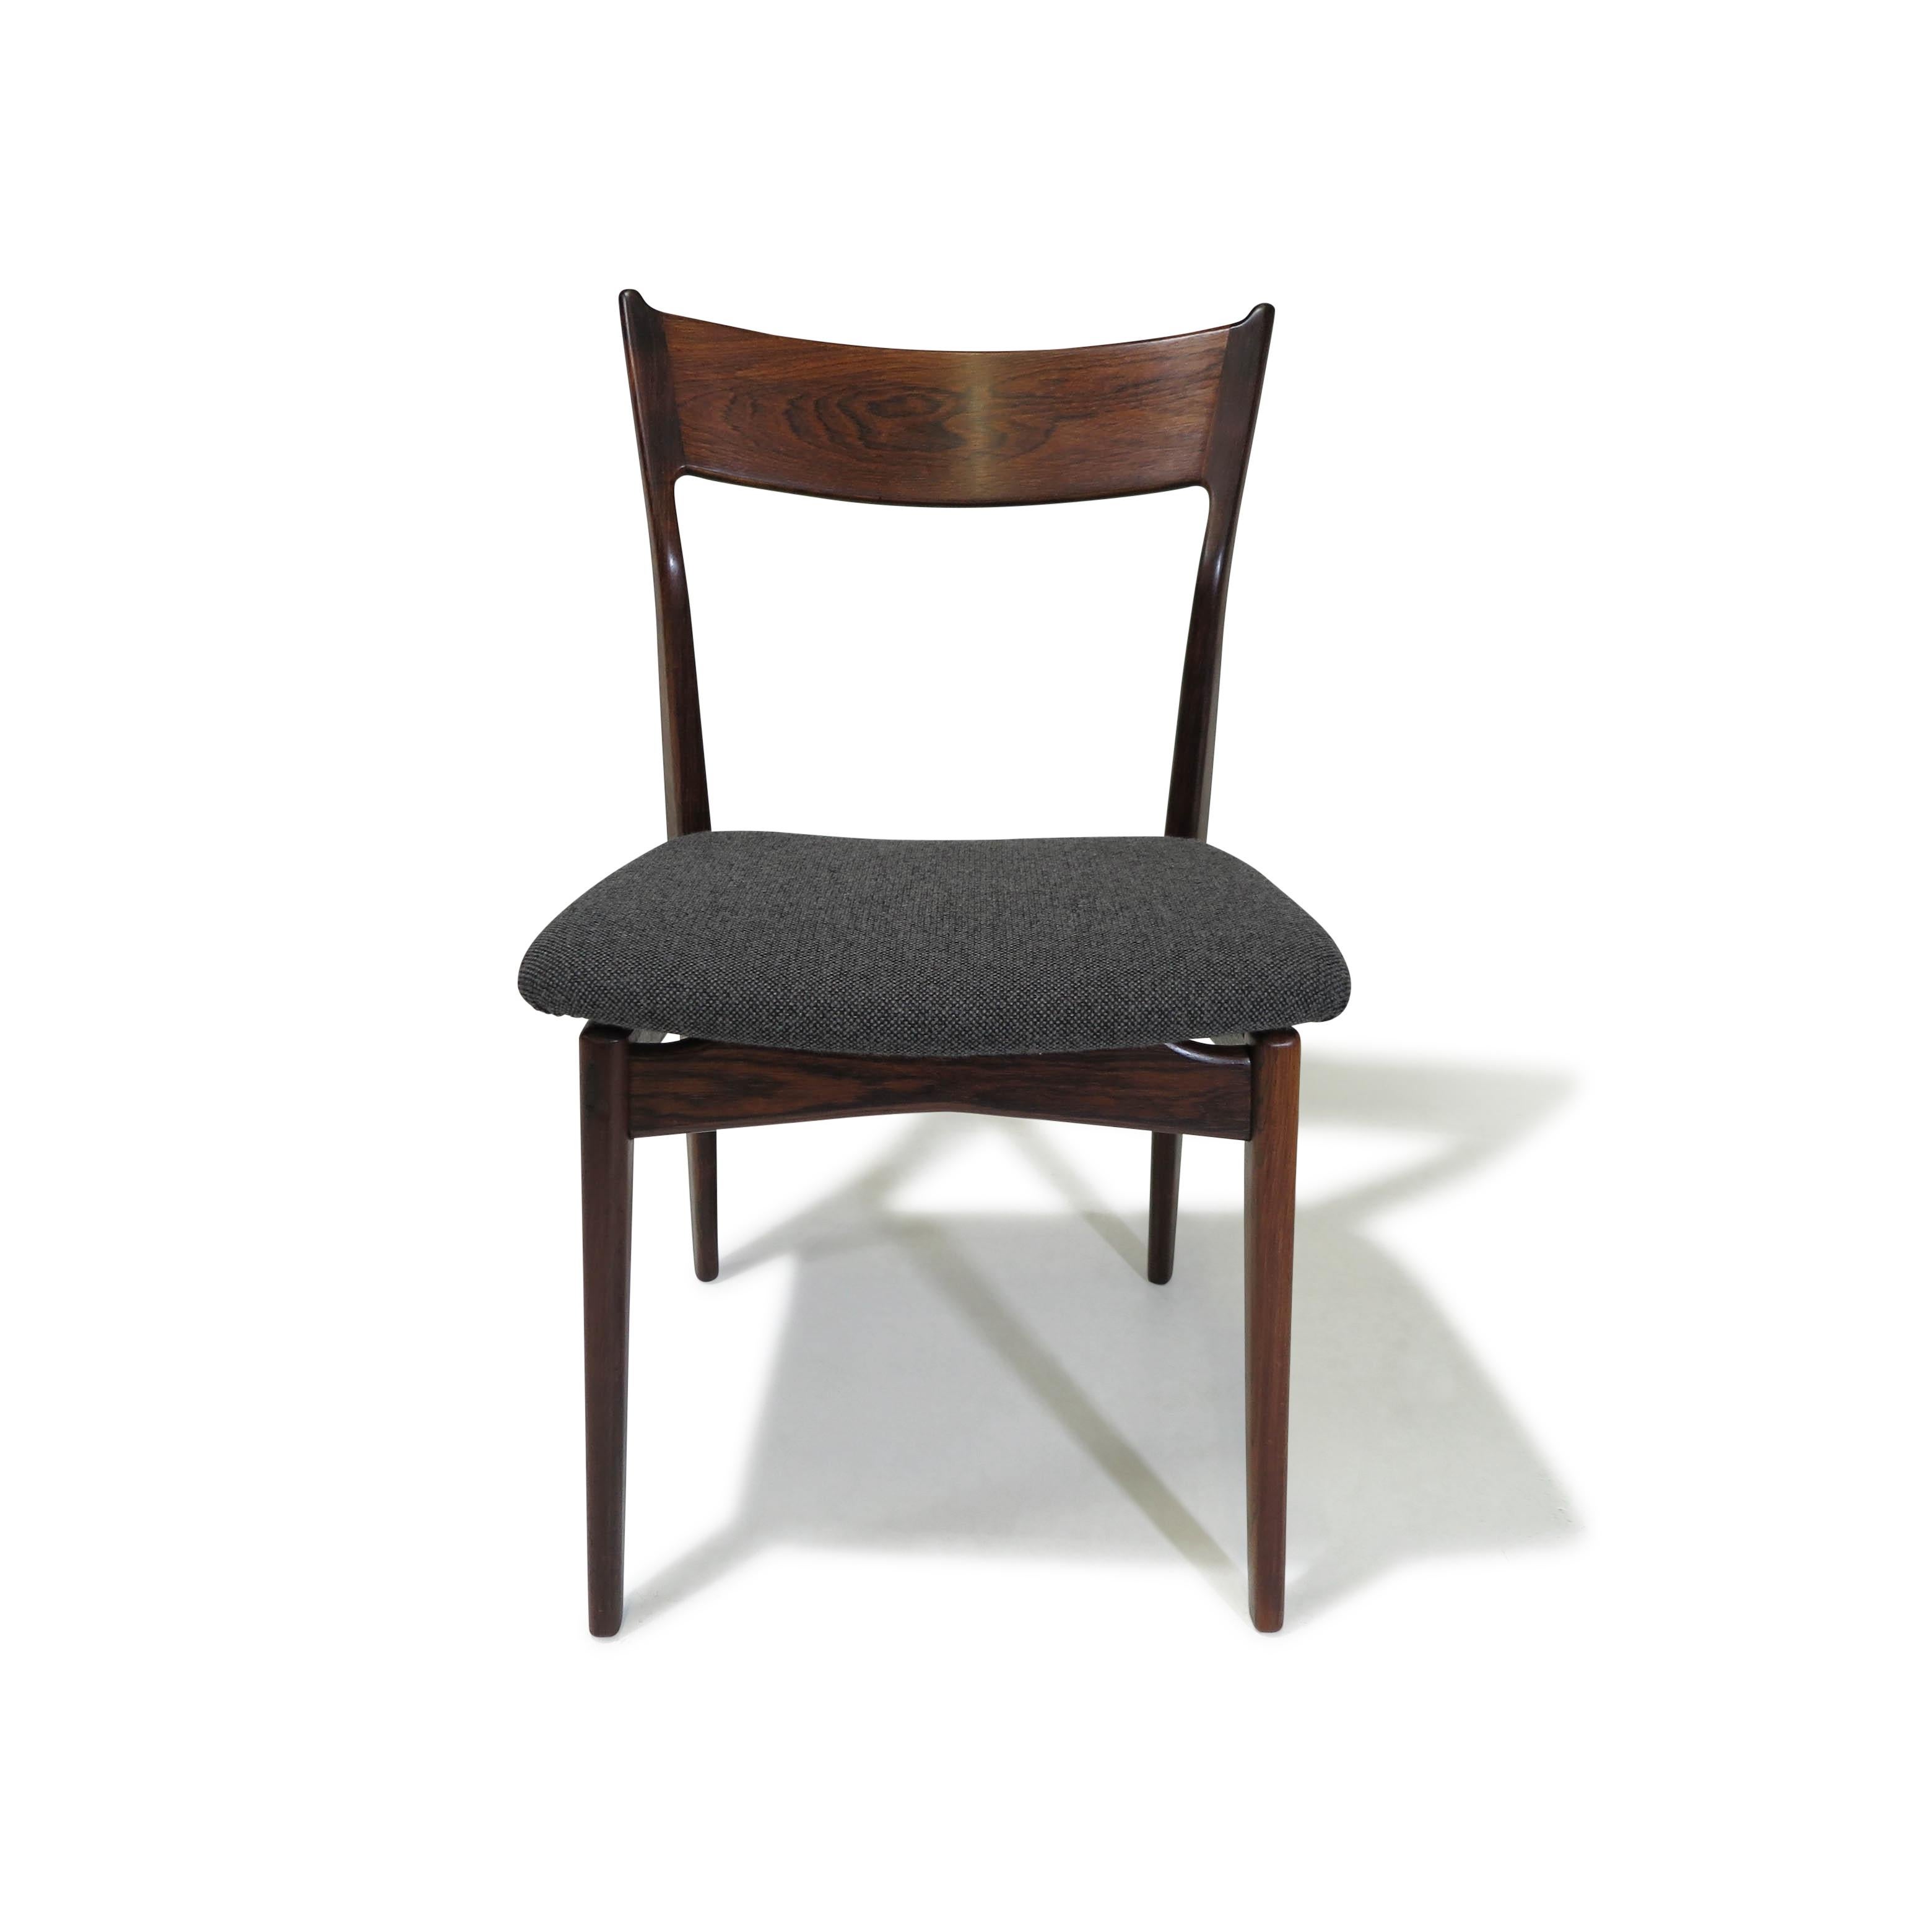 Chaises de salle à manger en palissandre brésilien du milieu du siècle, conçues par H.P. Hansen pour Randers Møbelfabrik. Fabriquées à la main en palissandre brésilien massif, ces chaises présentent des dossiers sculptés. Les cadres mettent en